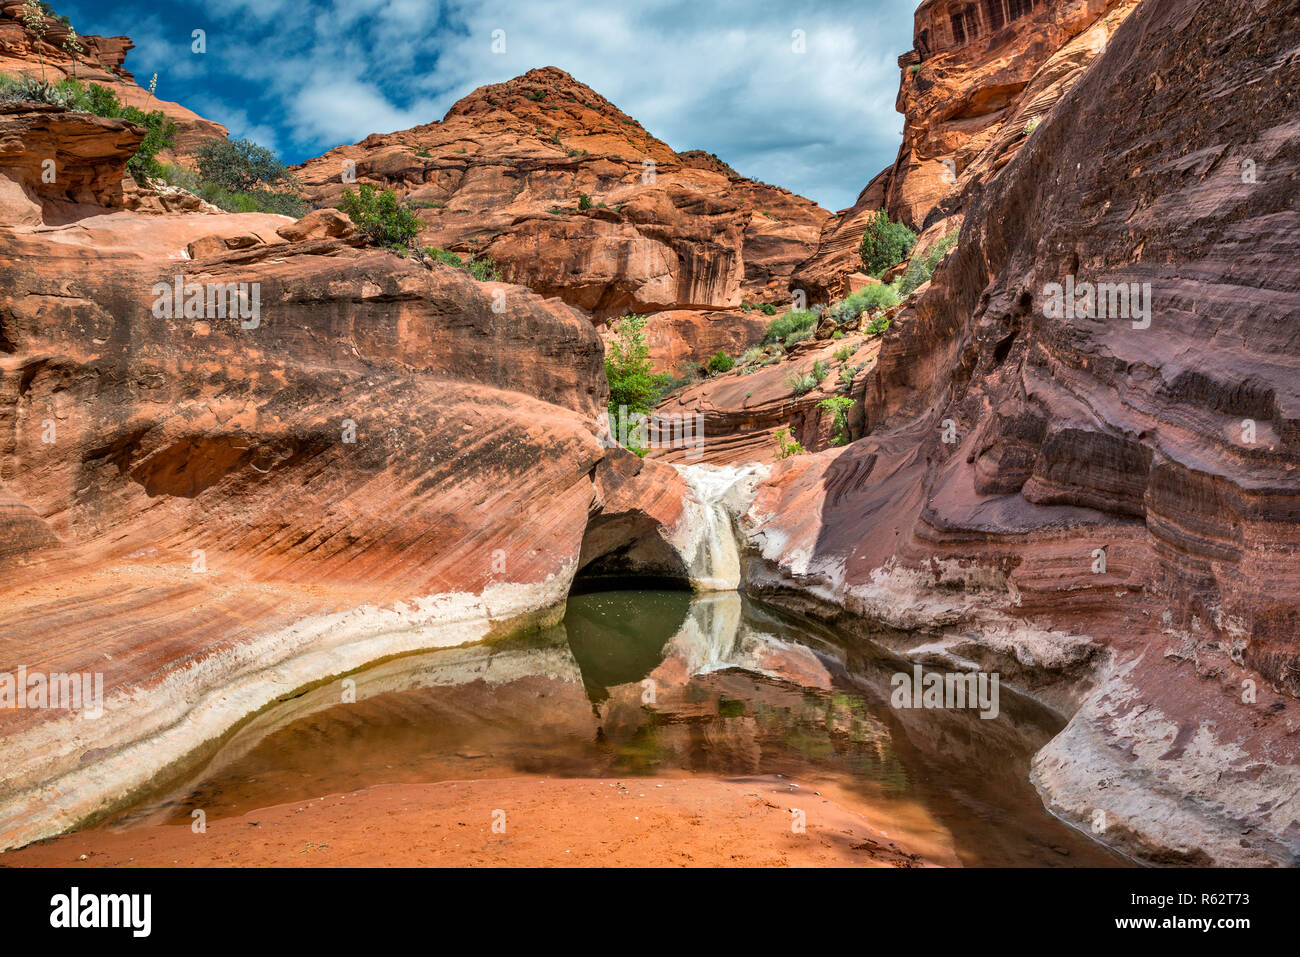 Tinaja, Wasser Pool in Navajo Sandstein Grundgestein am Roten Klippen Naherholungsgebiet, in der Nähe von St George, Utah, USA Stockfoto